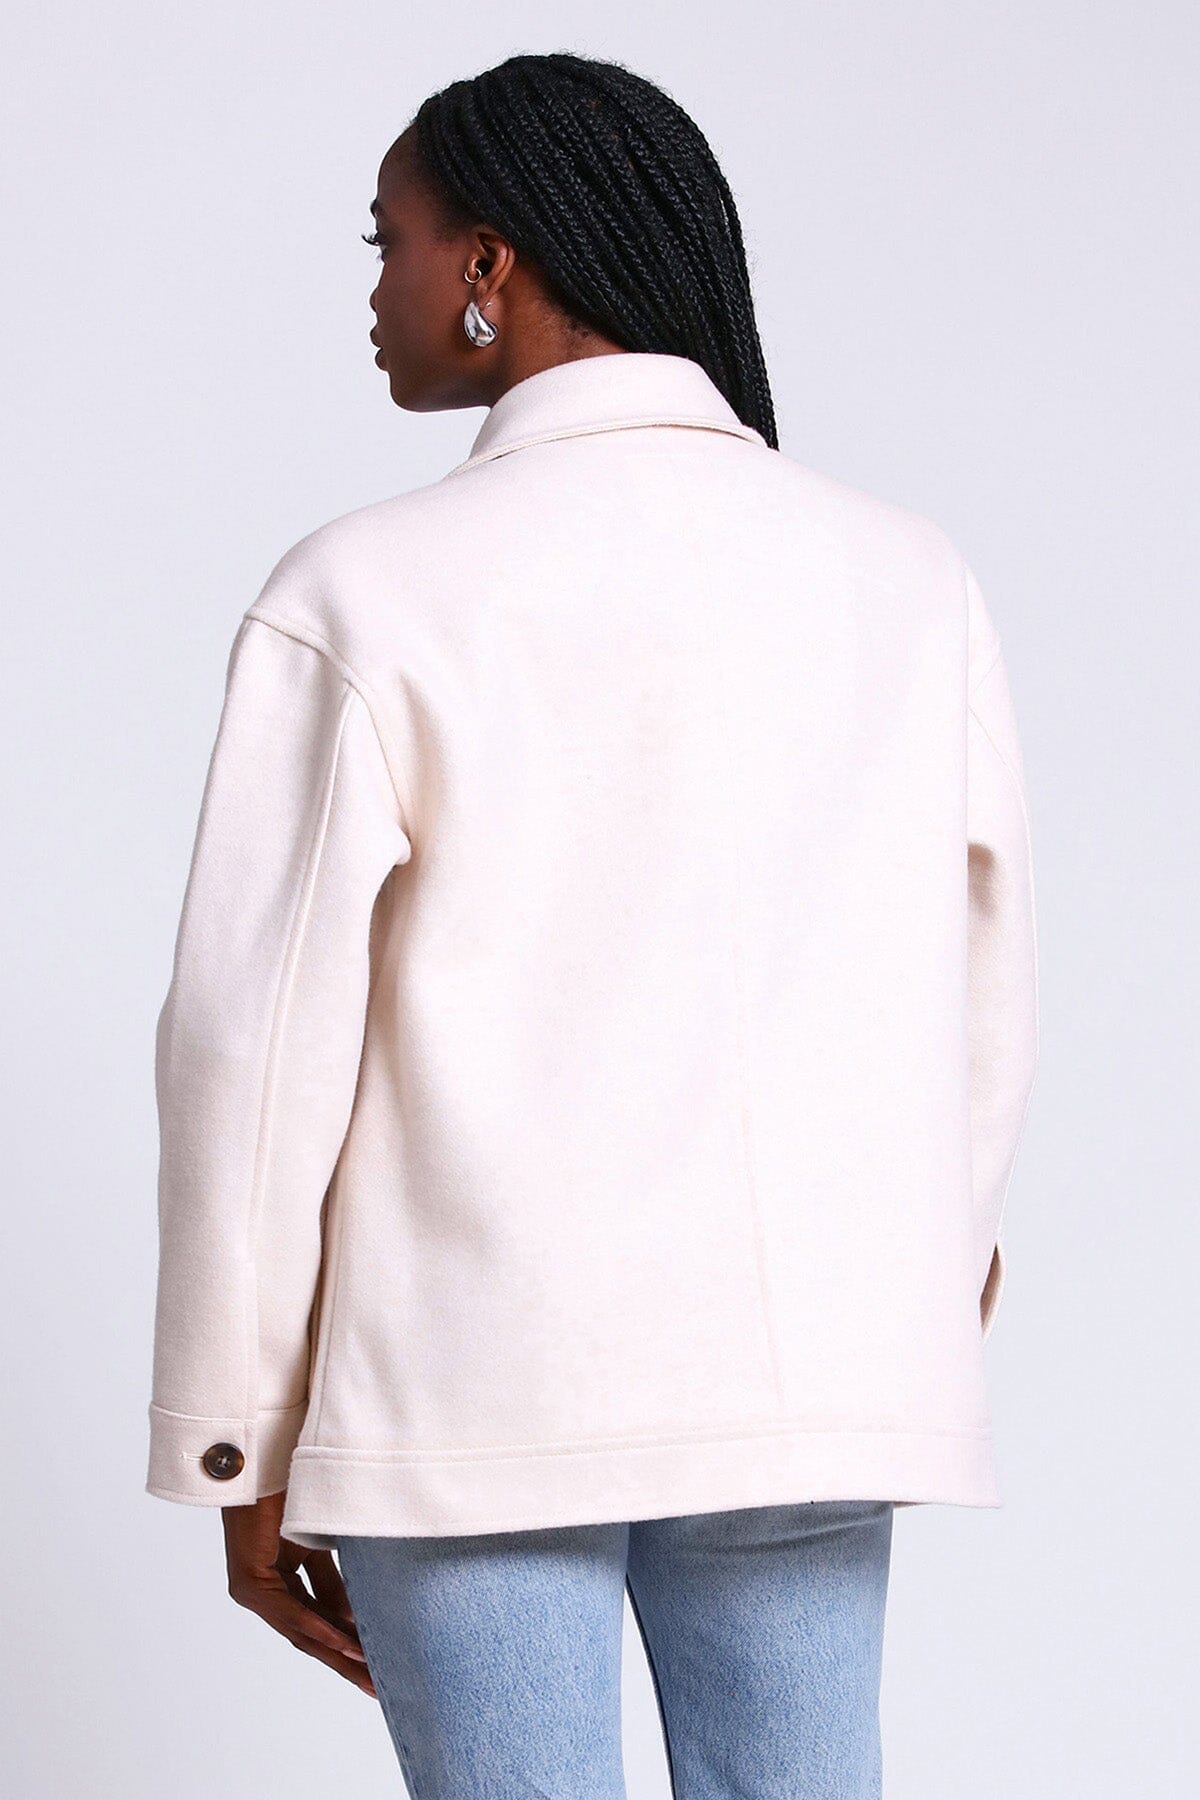 relaxed utility shacket coat jacket ivory white - figure flattering coats jackets shackets for women